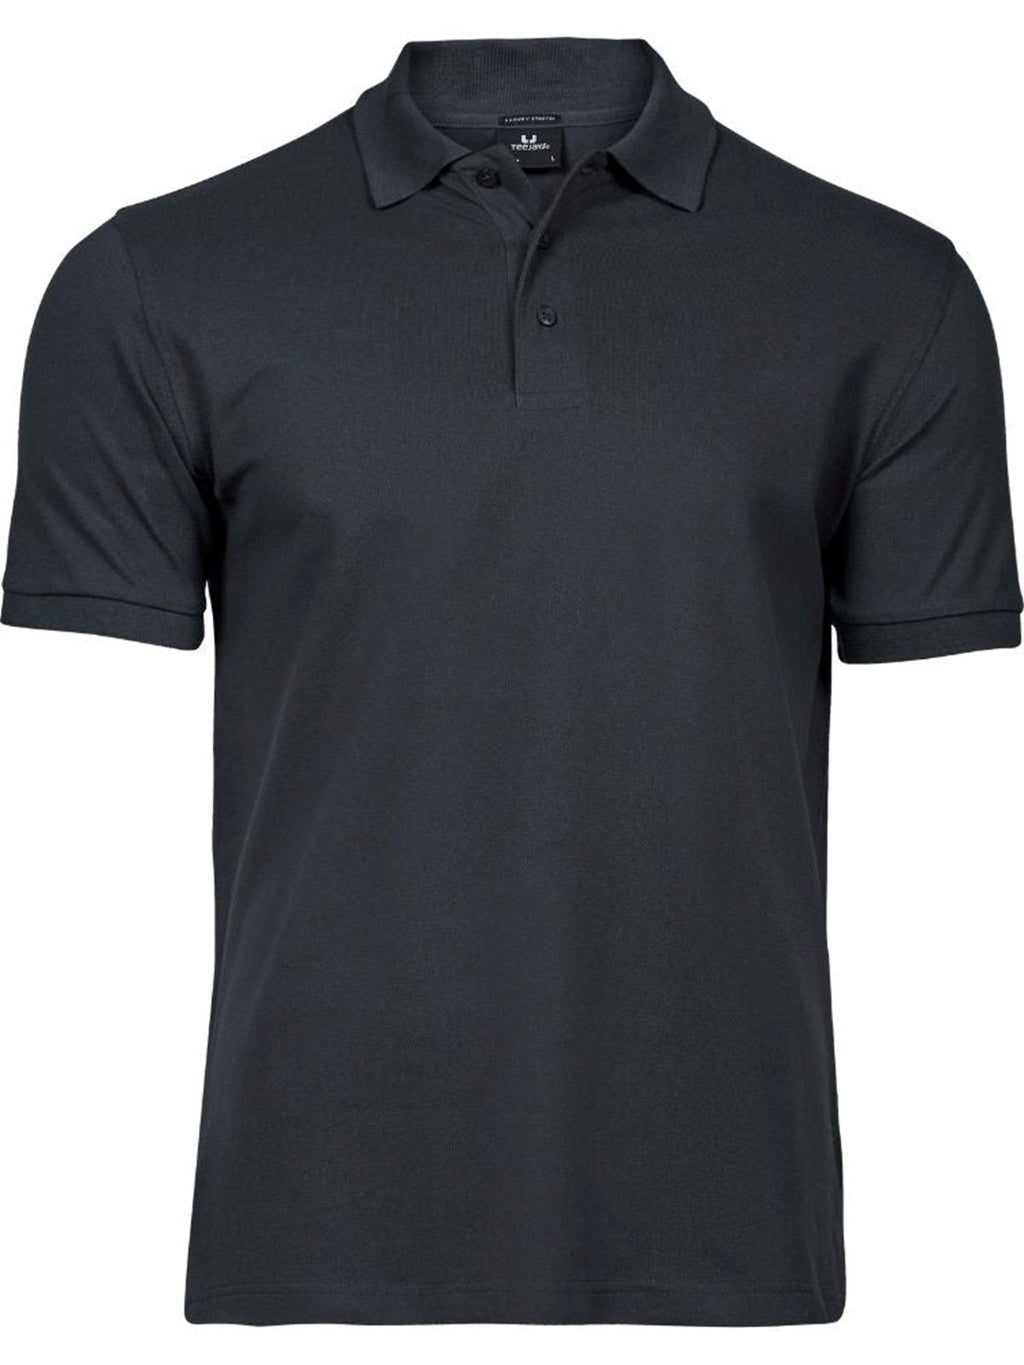 Basic Polo marškinėliai - tamsiai pilka